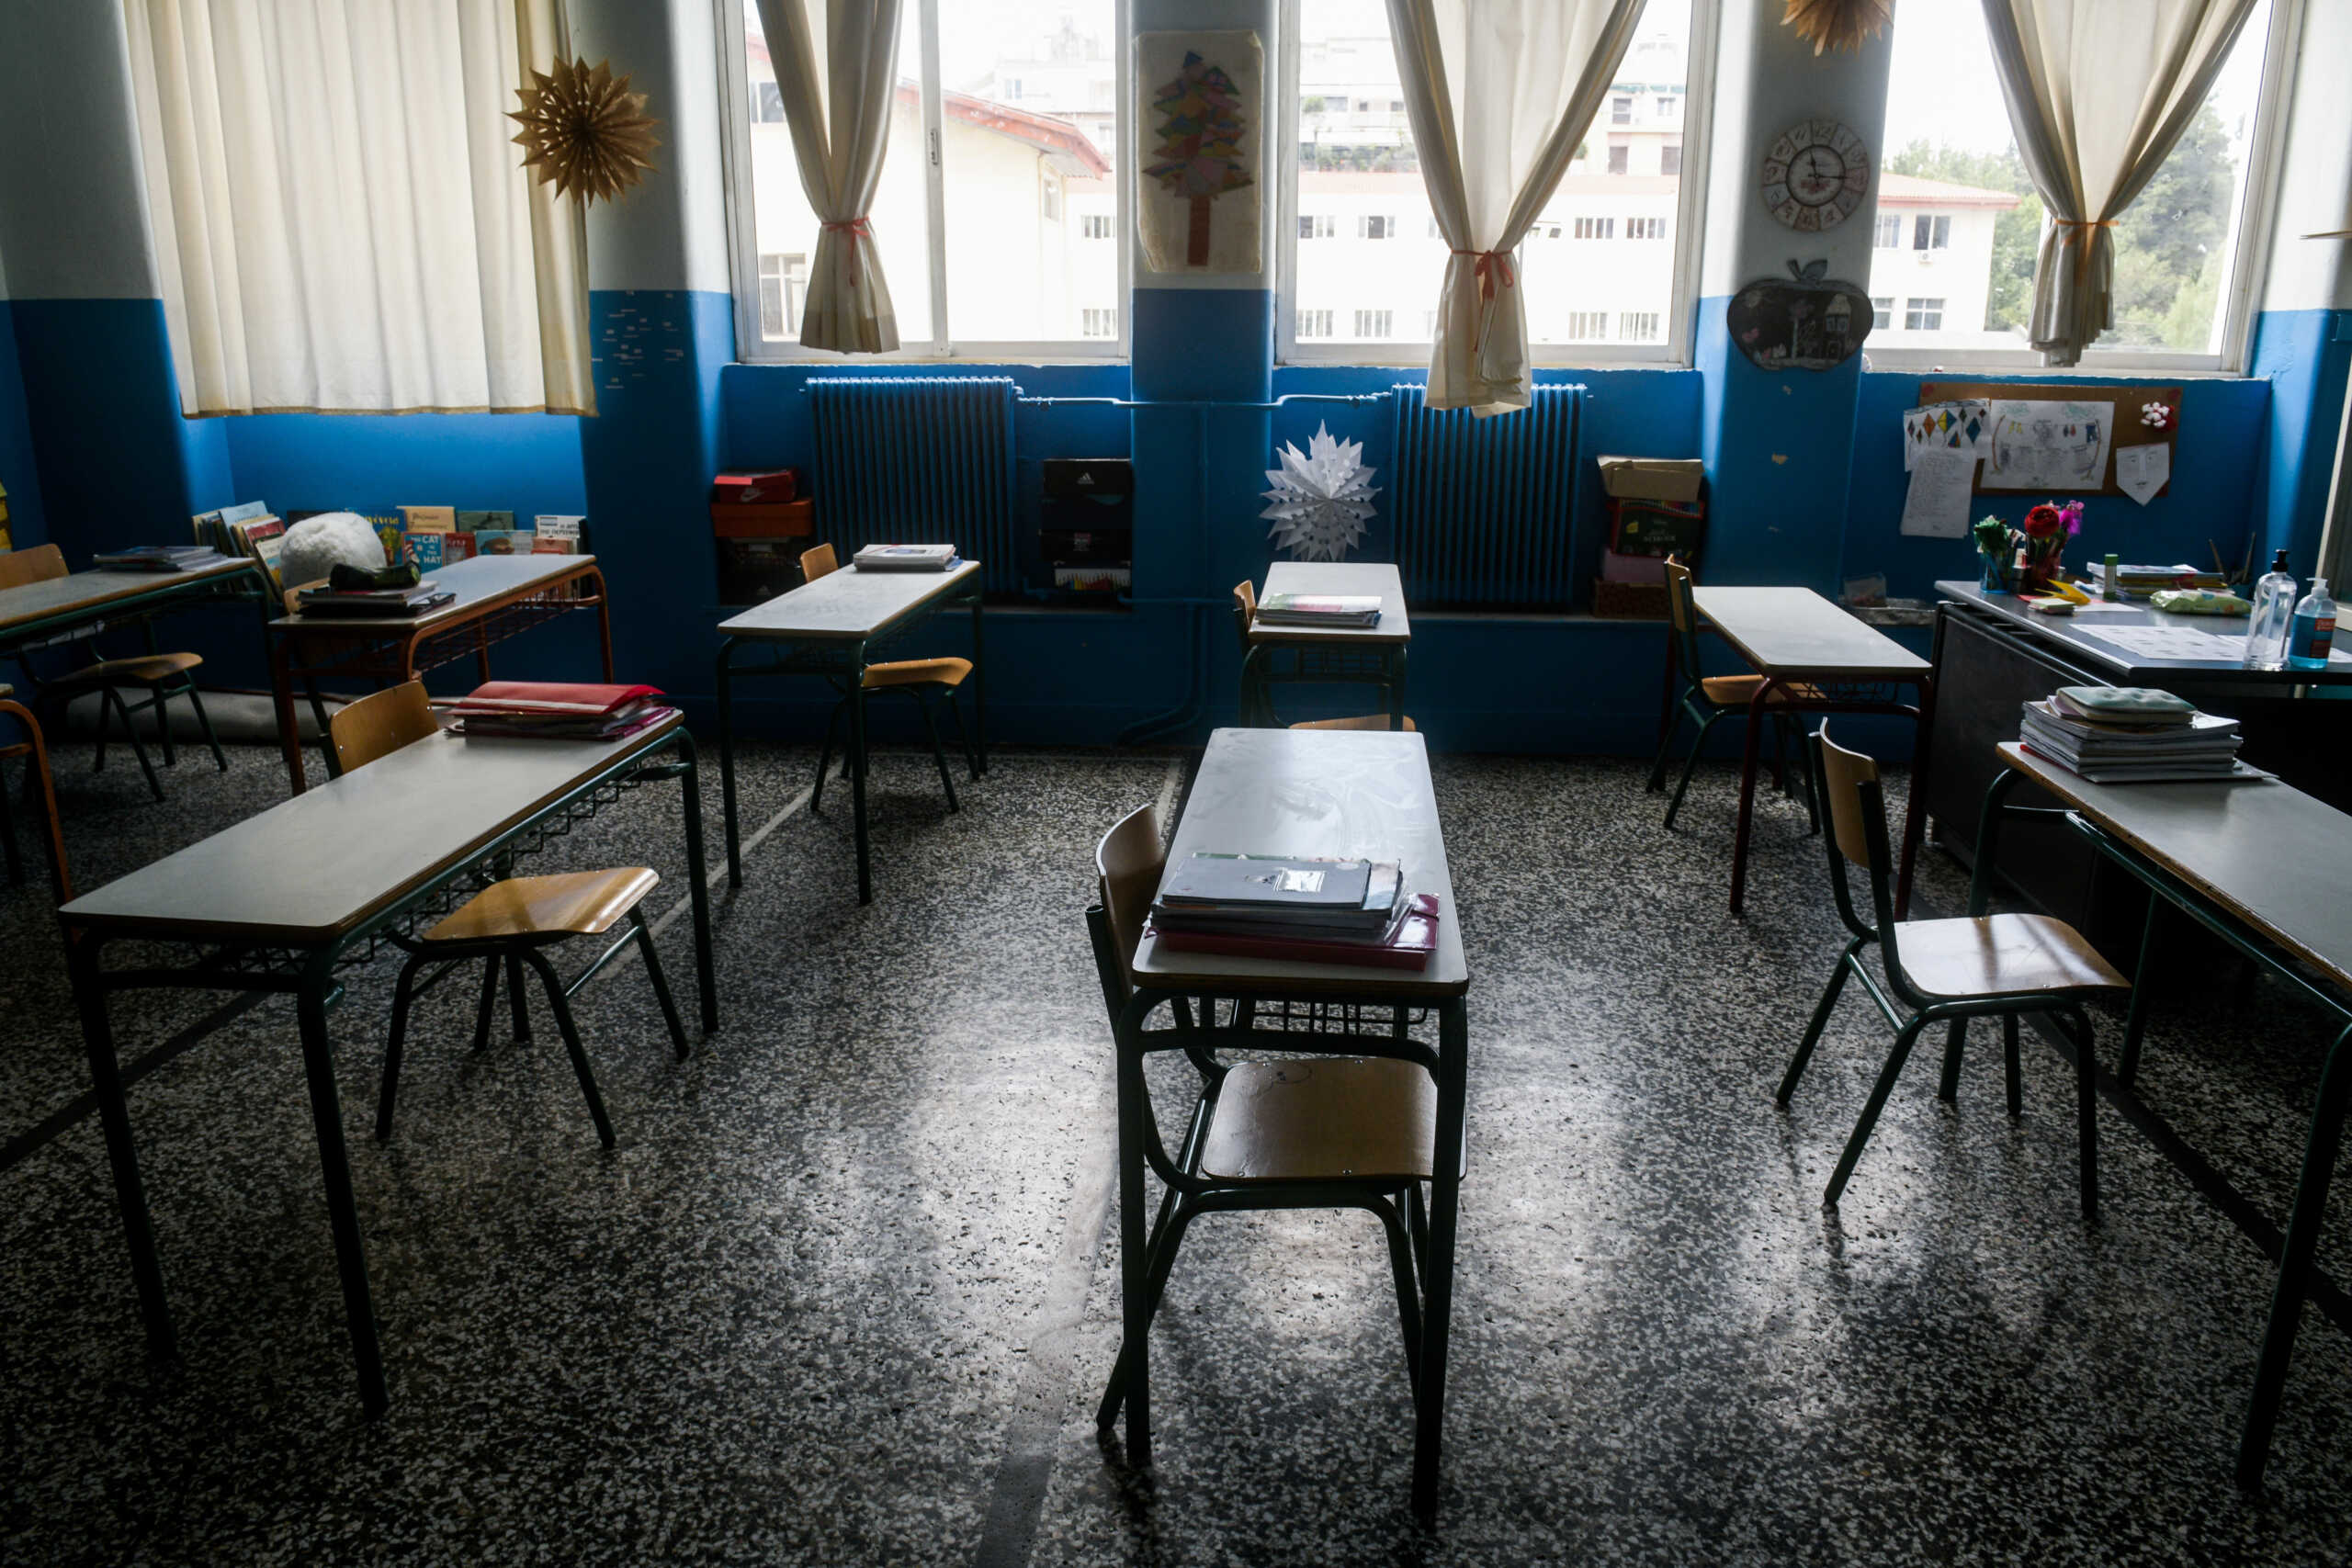 Βόλος: «Πόνεσα και άρχισα να φωνάζω» λέει ο 14χρονος που κατήγγειλε κακοποίηση σε σχολική εκδρομή στα Γιάννενα